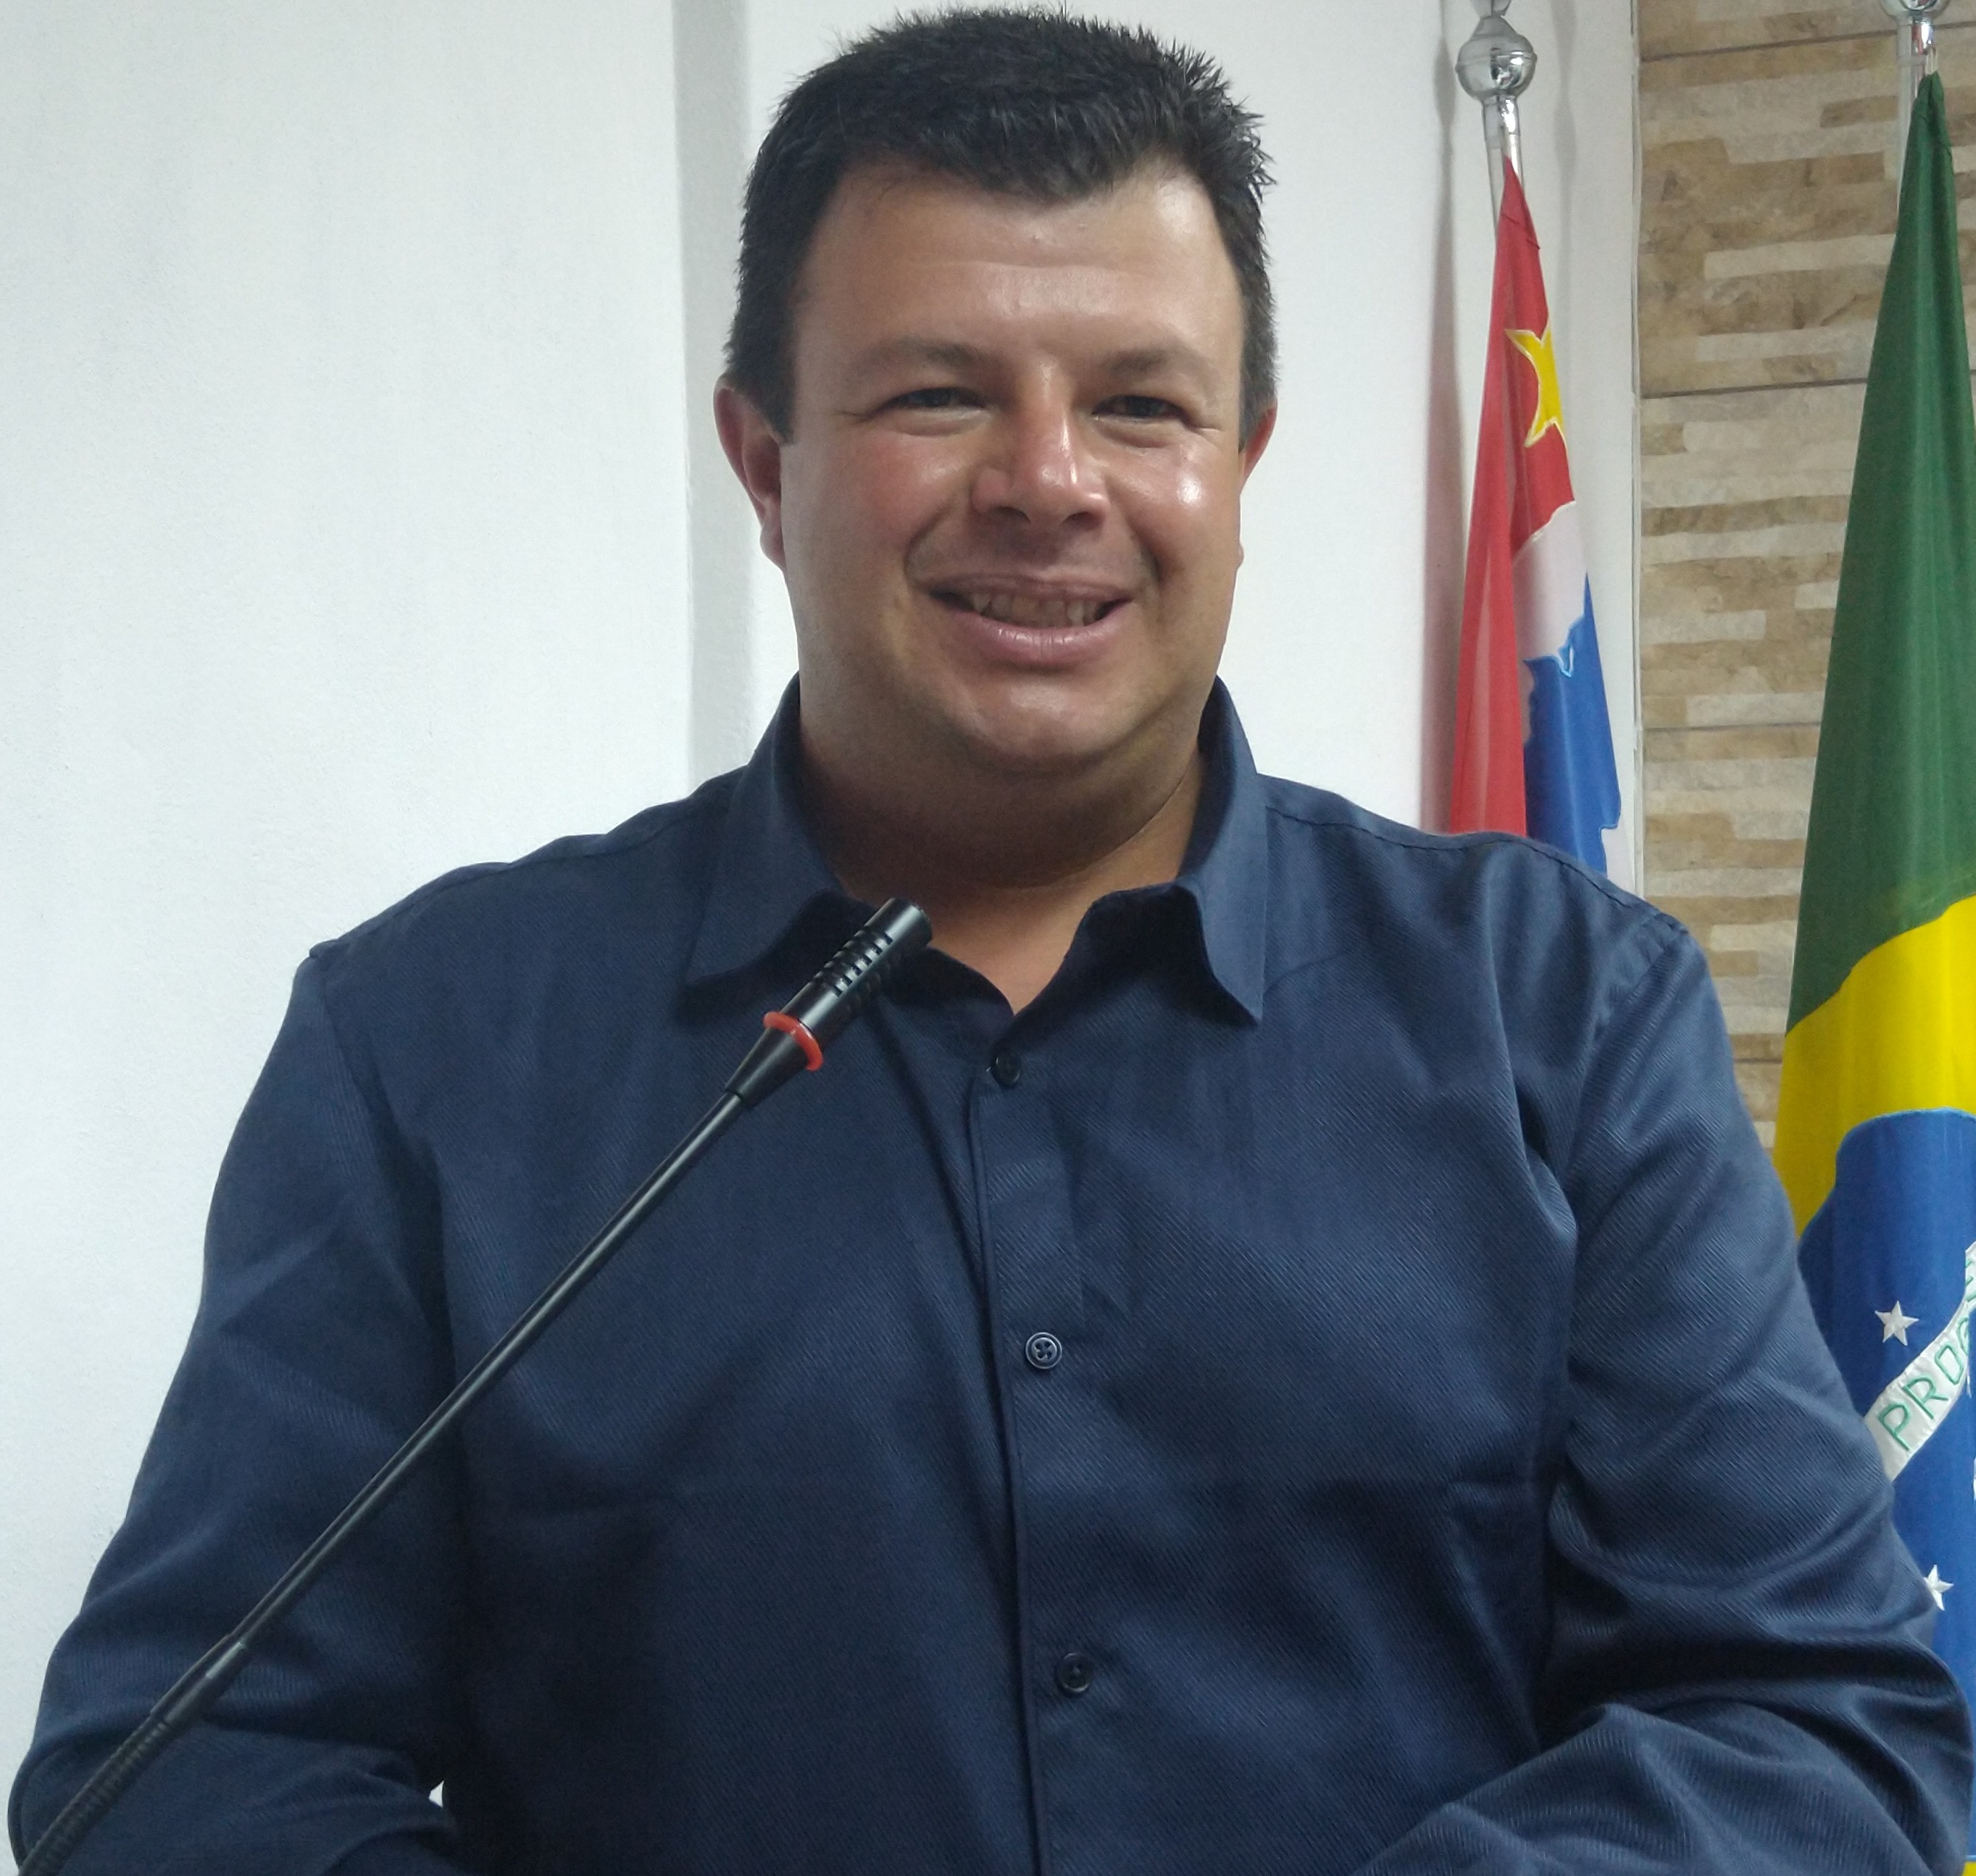 William Manoel dos Santos